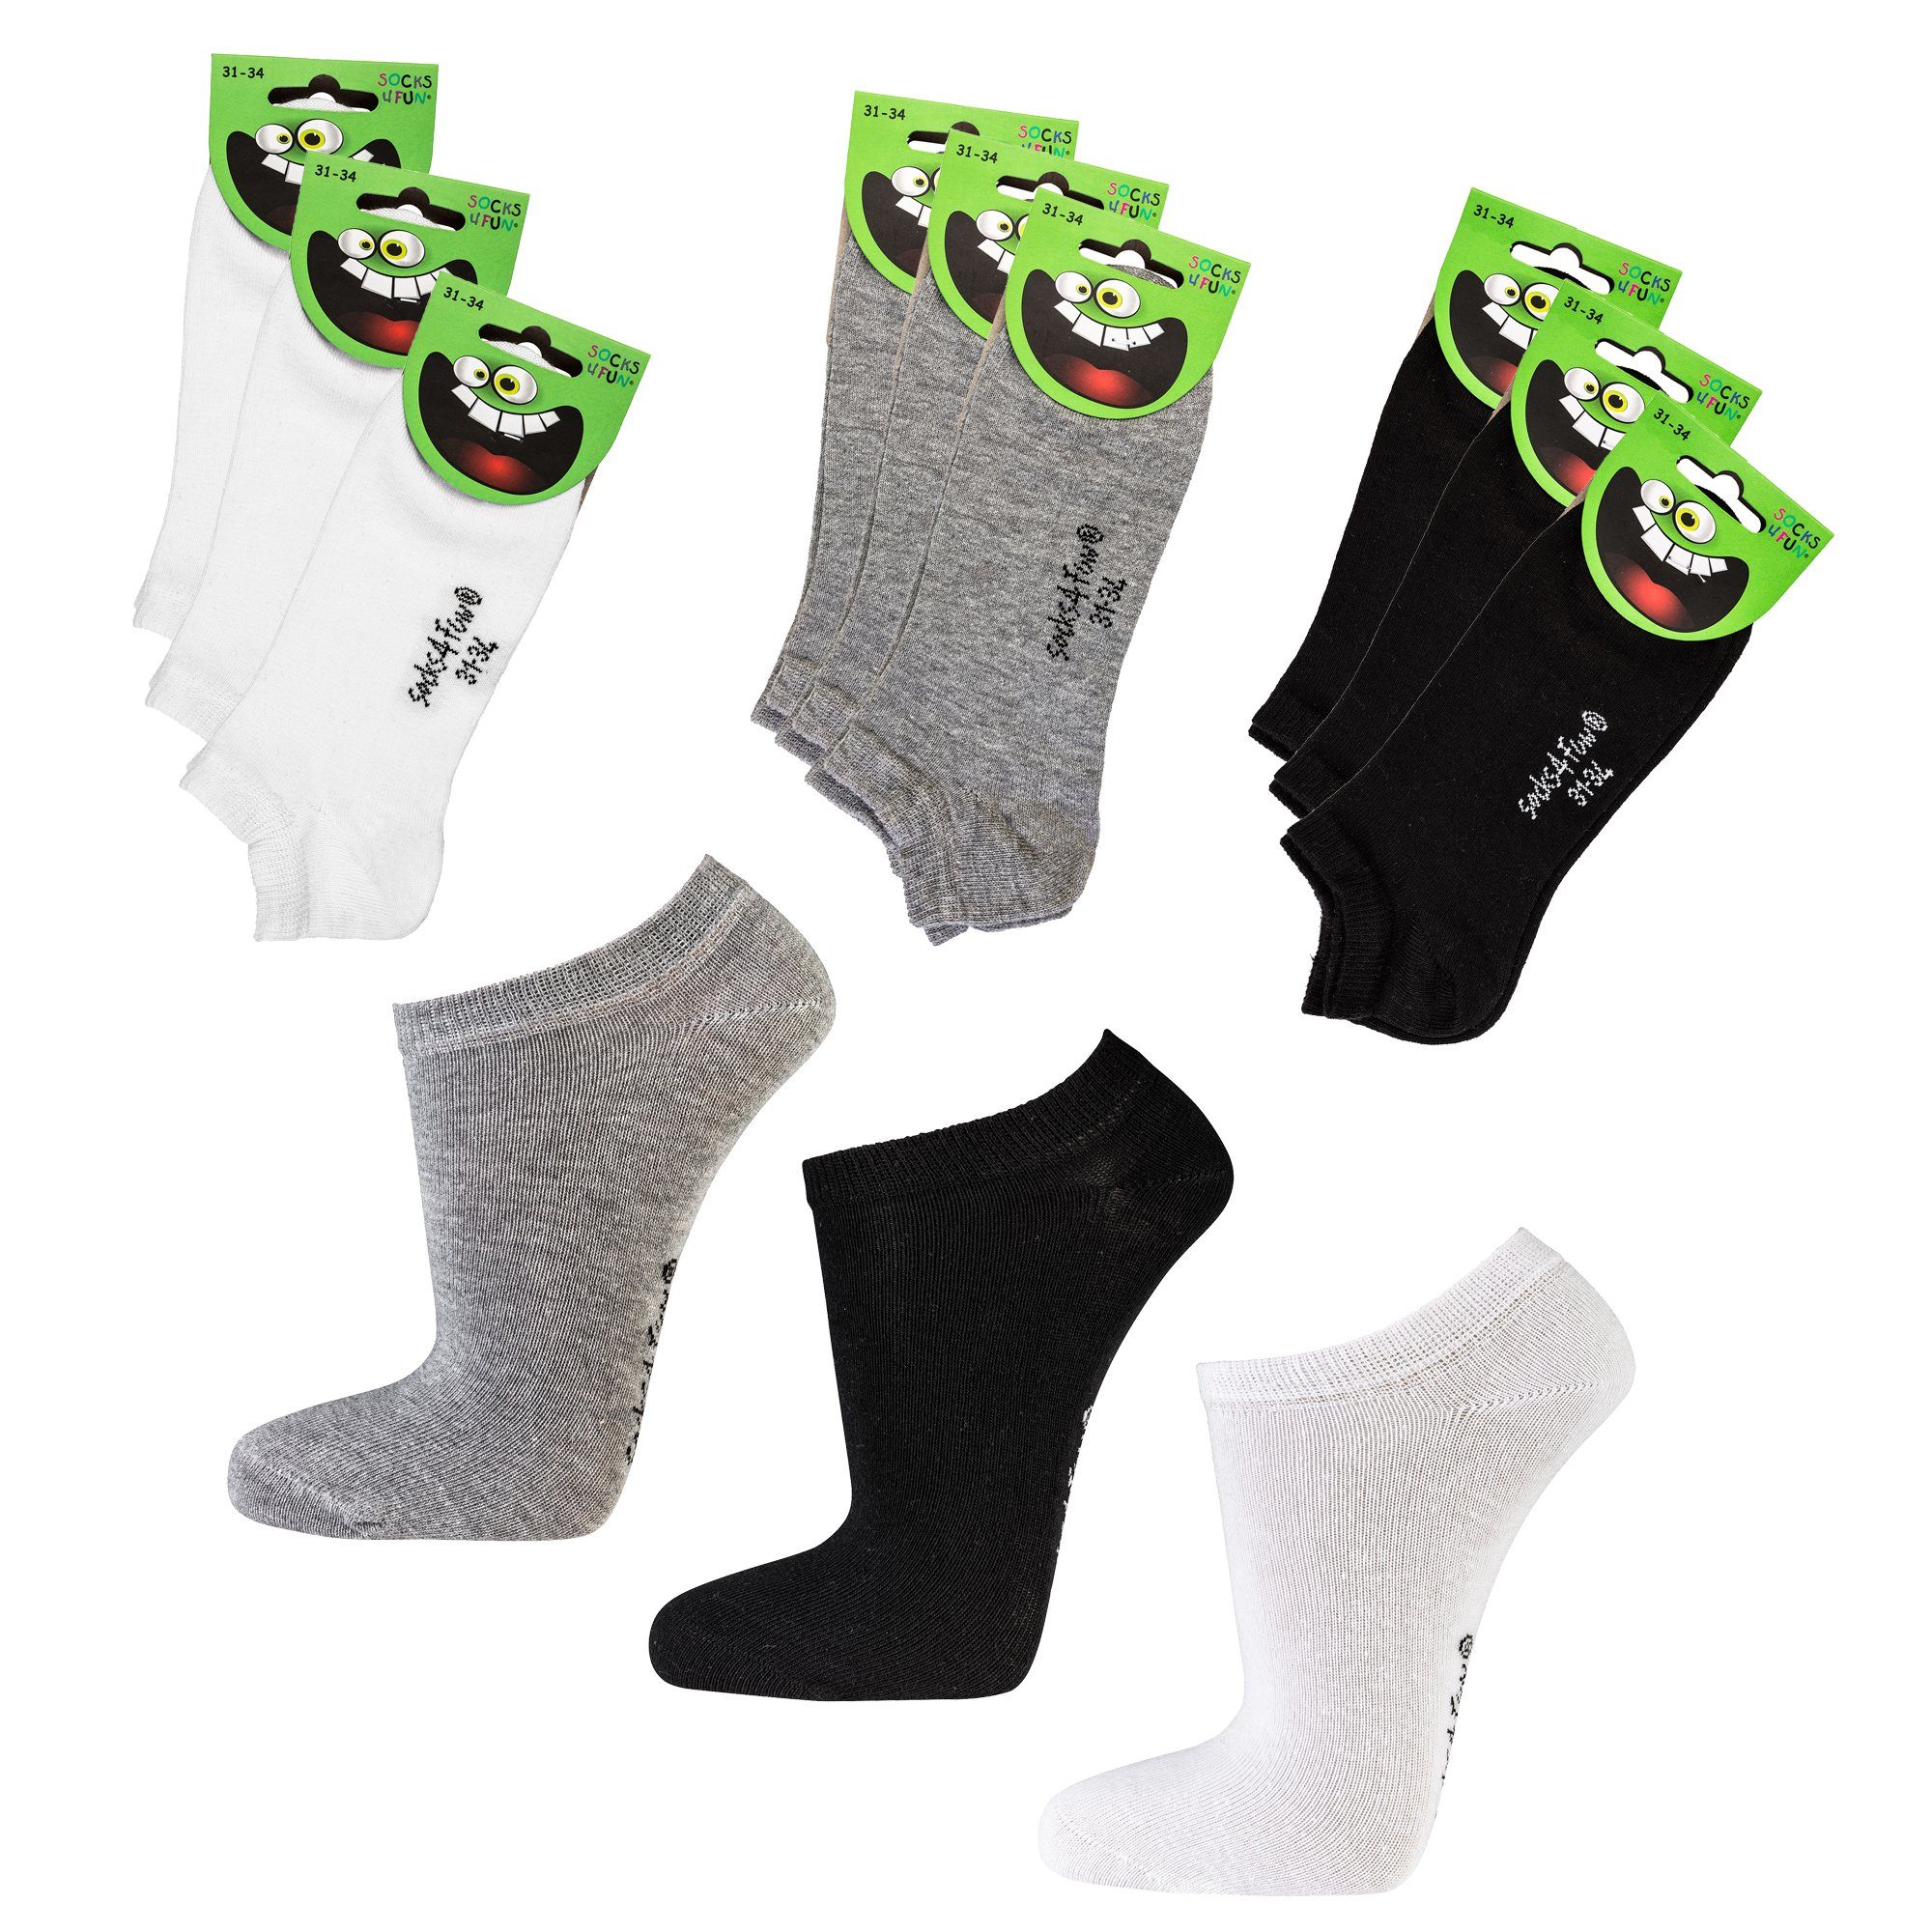 Socks 4 Fun Sneakersocken 3185 (Packung, 9-Paar, 9 Paar) unifarbene Kinder Socken Sneakersocken Jungen Mädchen weiß+grau+schwarz